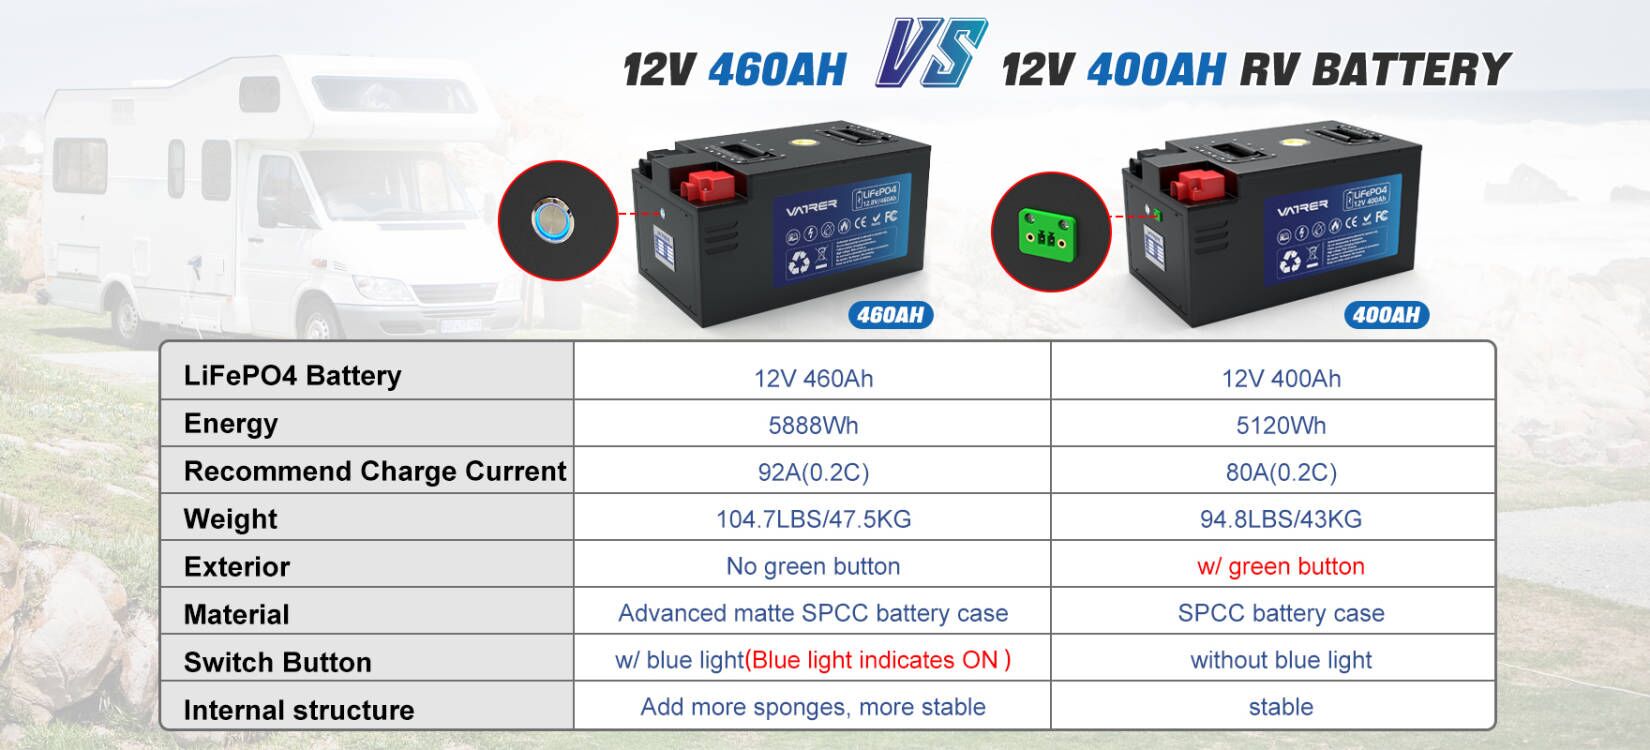 12V 460Ah VS 12V 400Ah RV Battery